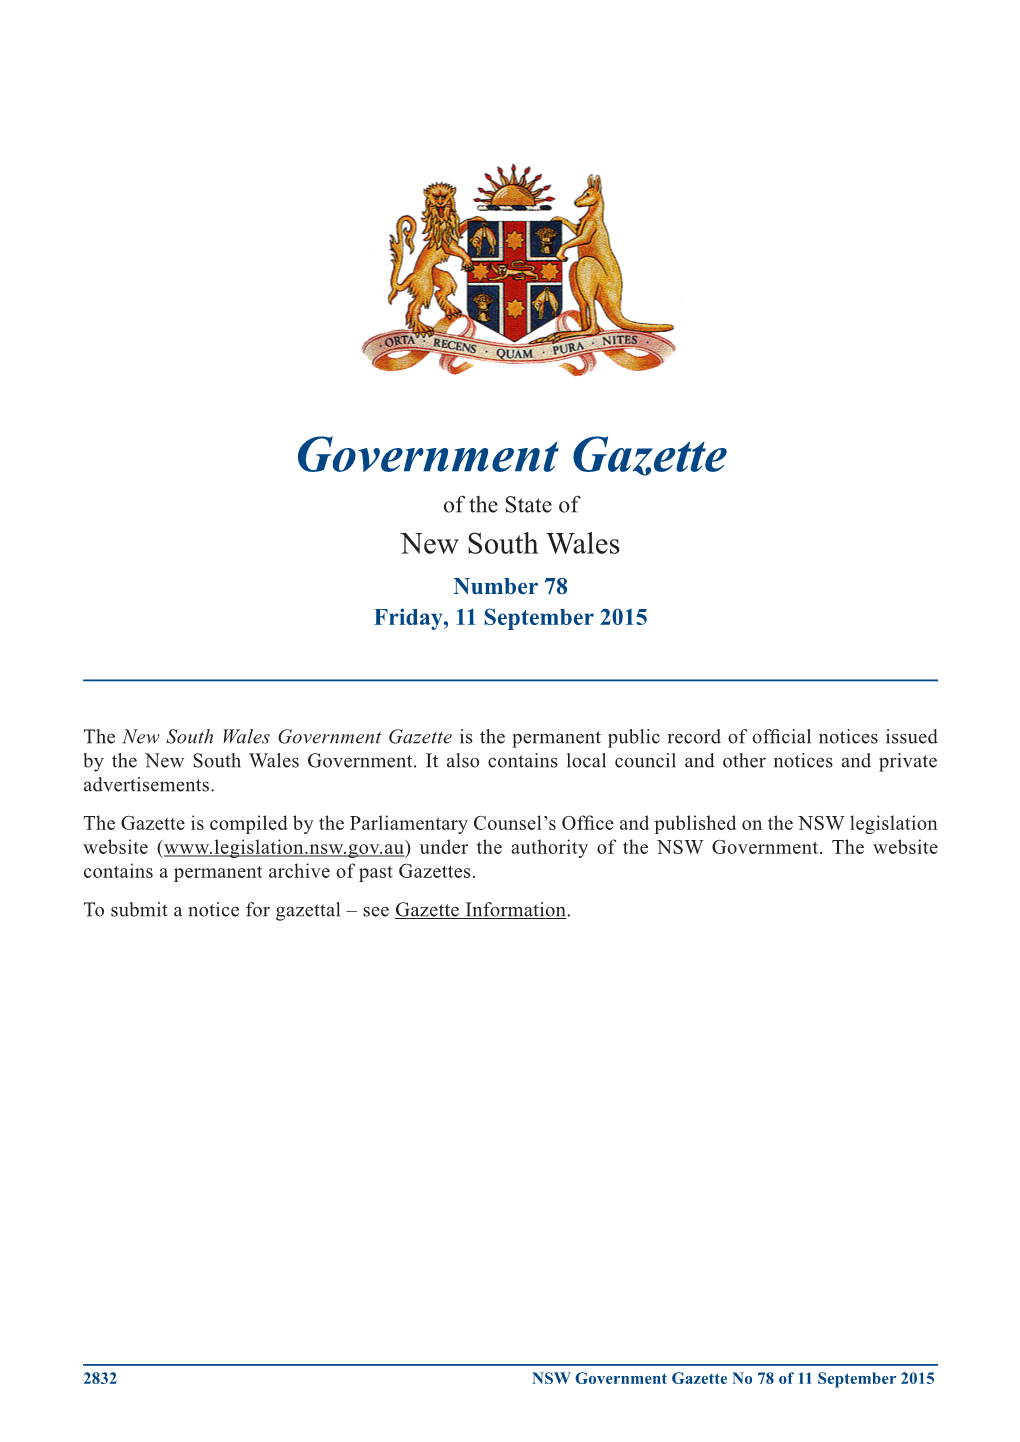 Government Gazette No 78 of 11 September 2015